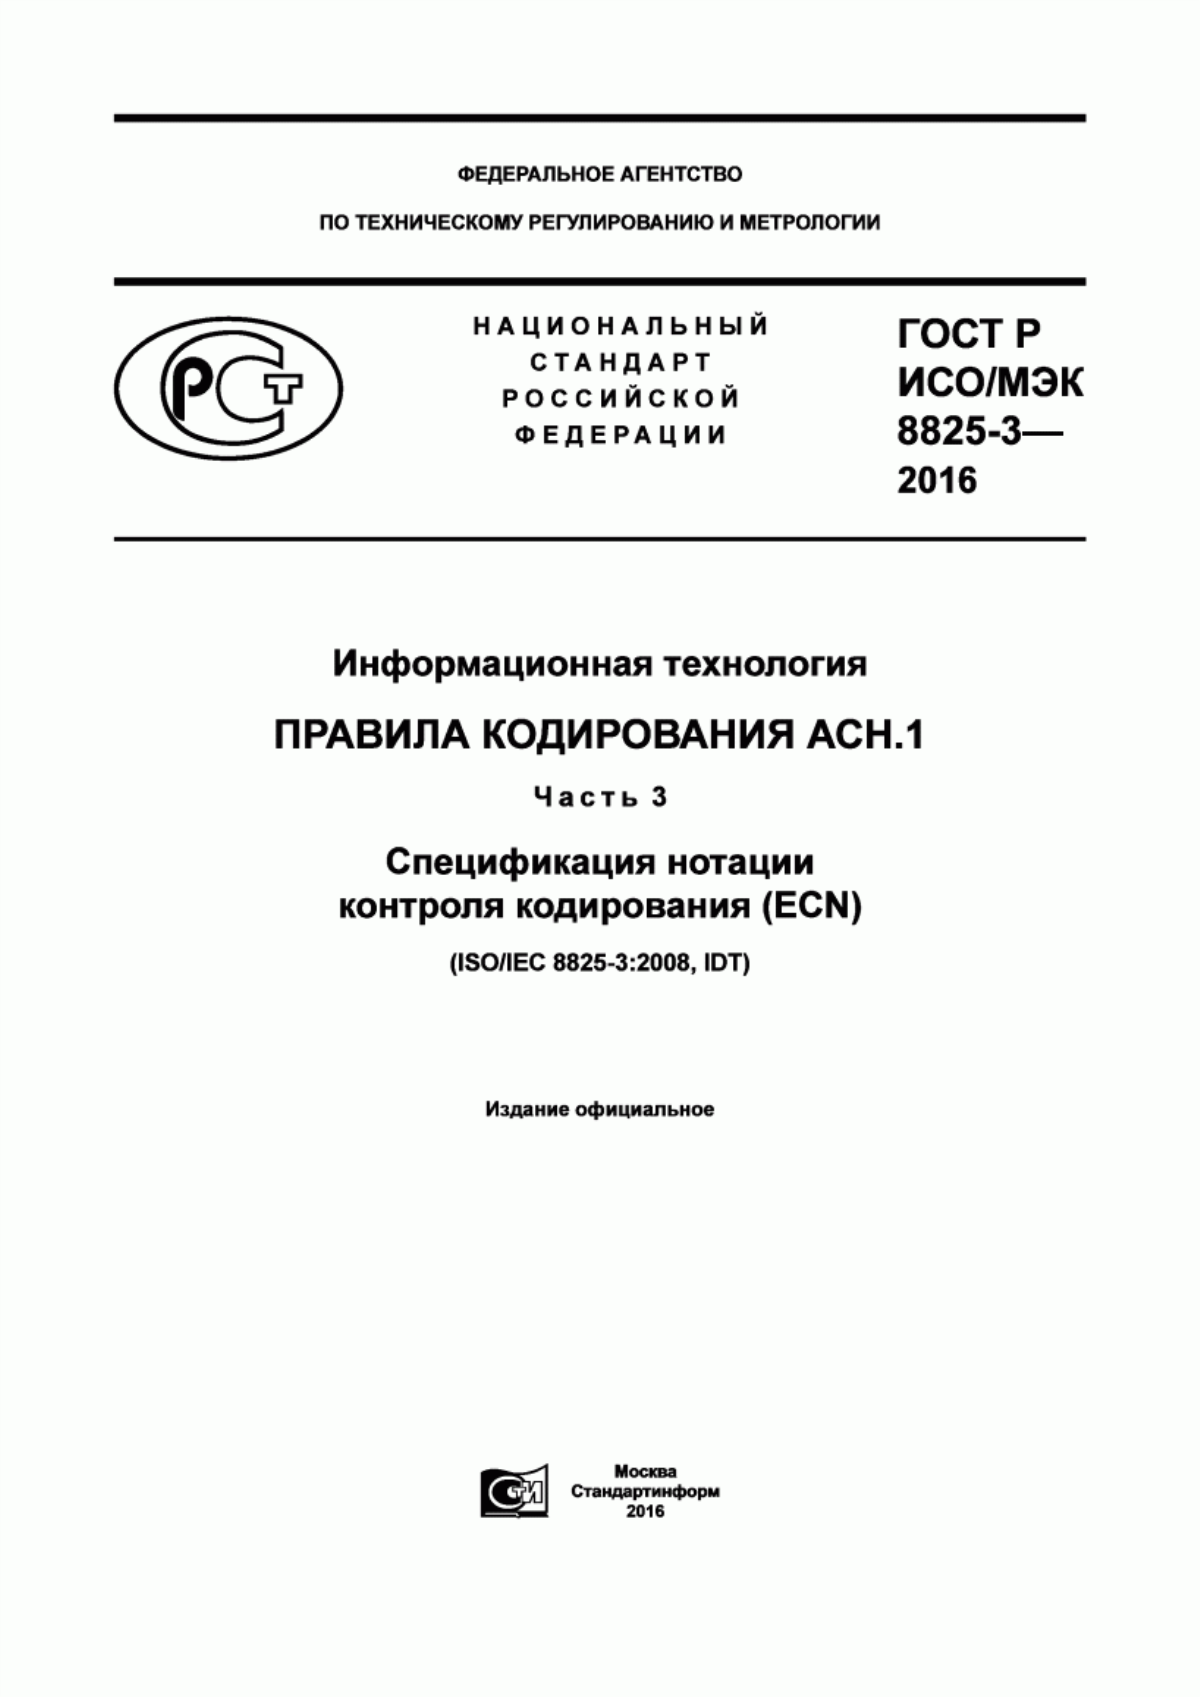 ГОСТ Р ИСО/МЭК 8825-3-2016 Информационная технология. Правила кодирования АСН.1. Часть 3. Спецификация нотации контроля кодирования (ECN)